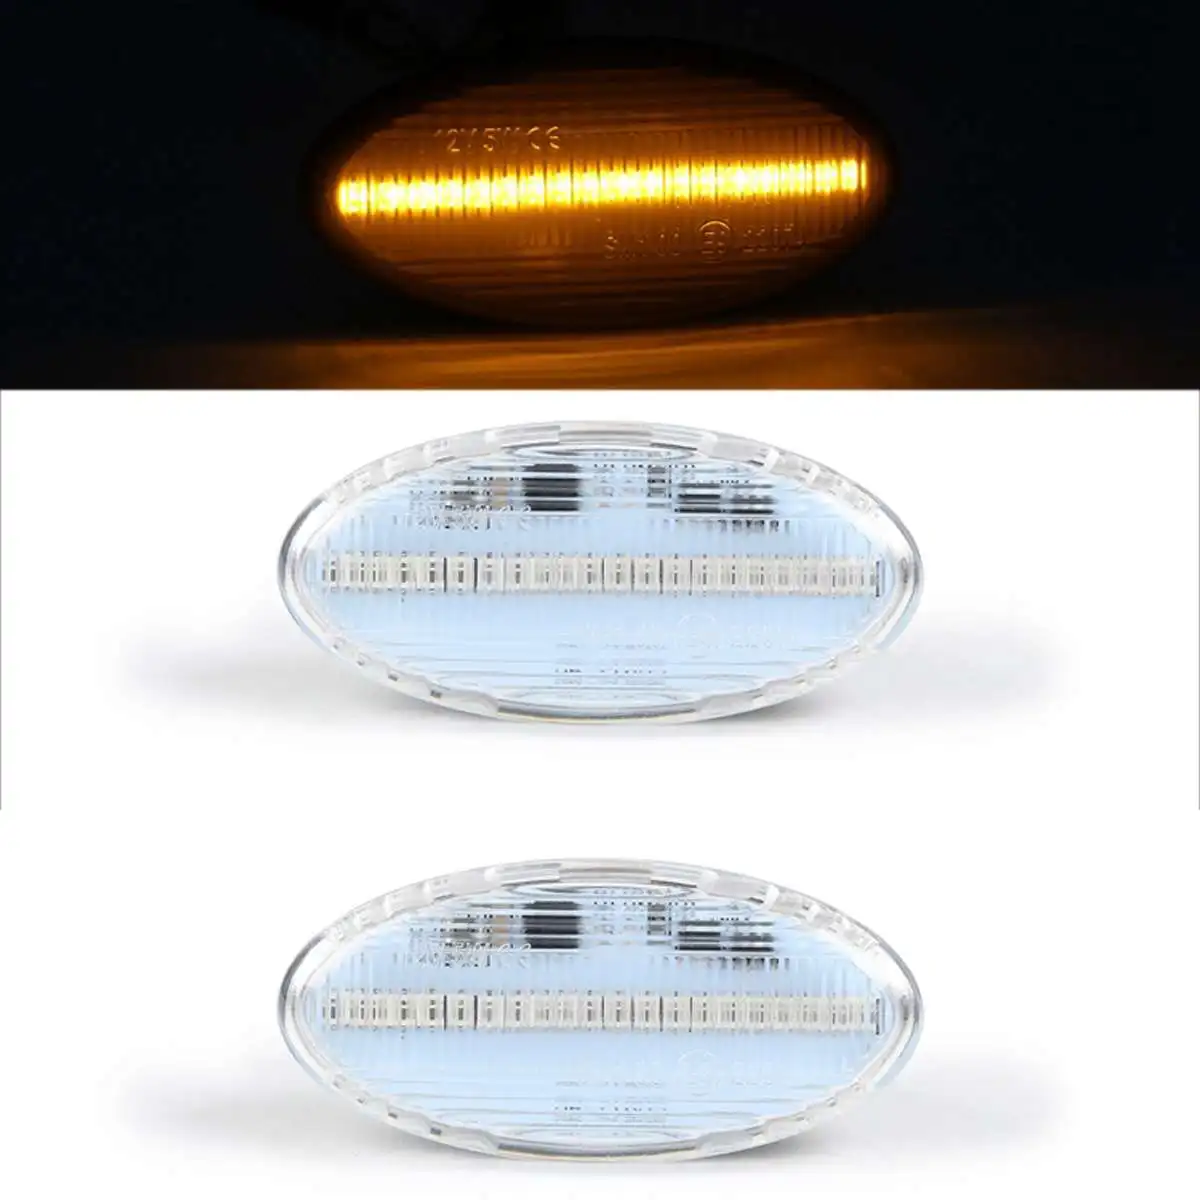 2x автомобиль бортовой светильник светодиодный sidermarker лампа динамичные плавные последовательный сигнал поворота светильник для Mazda 2 3 5 6 BT-50 MPV Субару Outback 2000-2013 - Испускаемый цвет: Clear